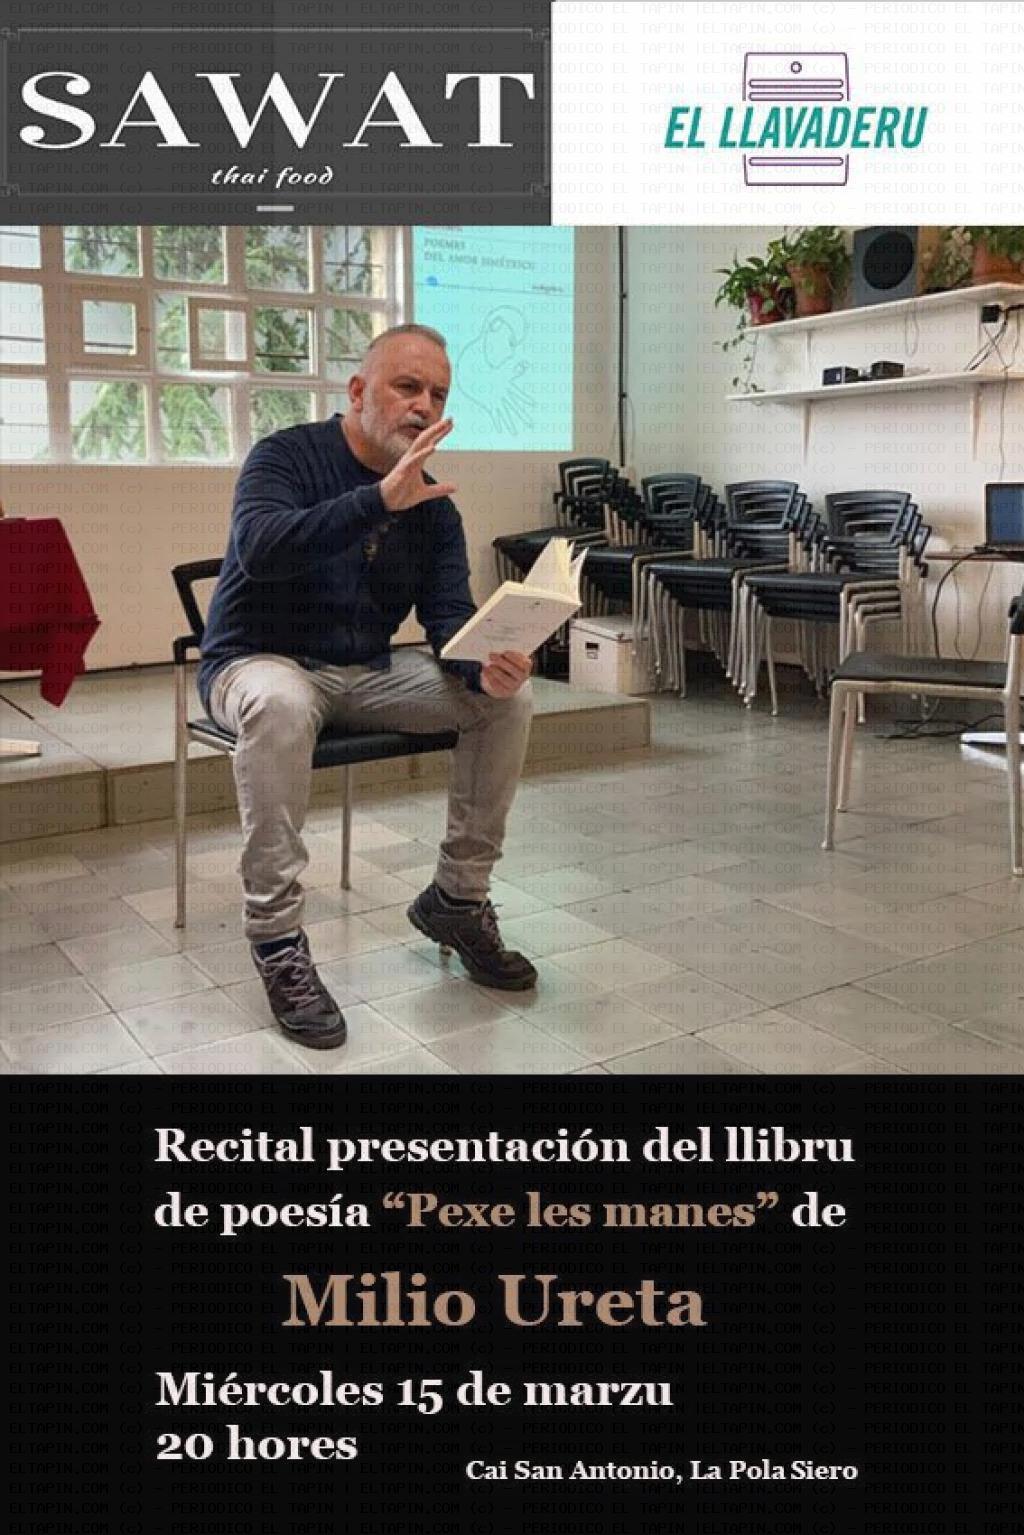 El Tapin - Presentación del libro “Pexe les manes” el 15 de marzo en el local de la asociación El Llavaderu 